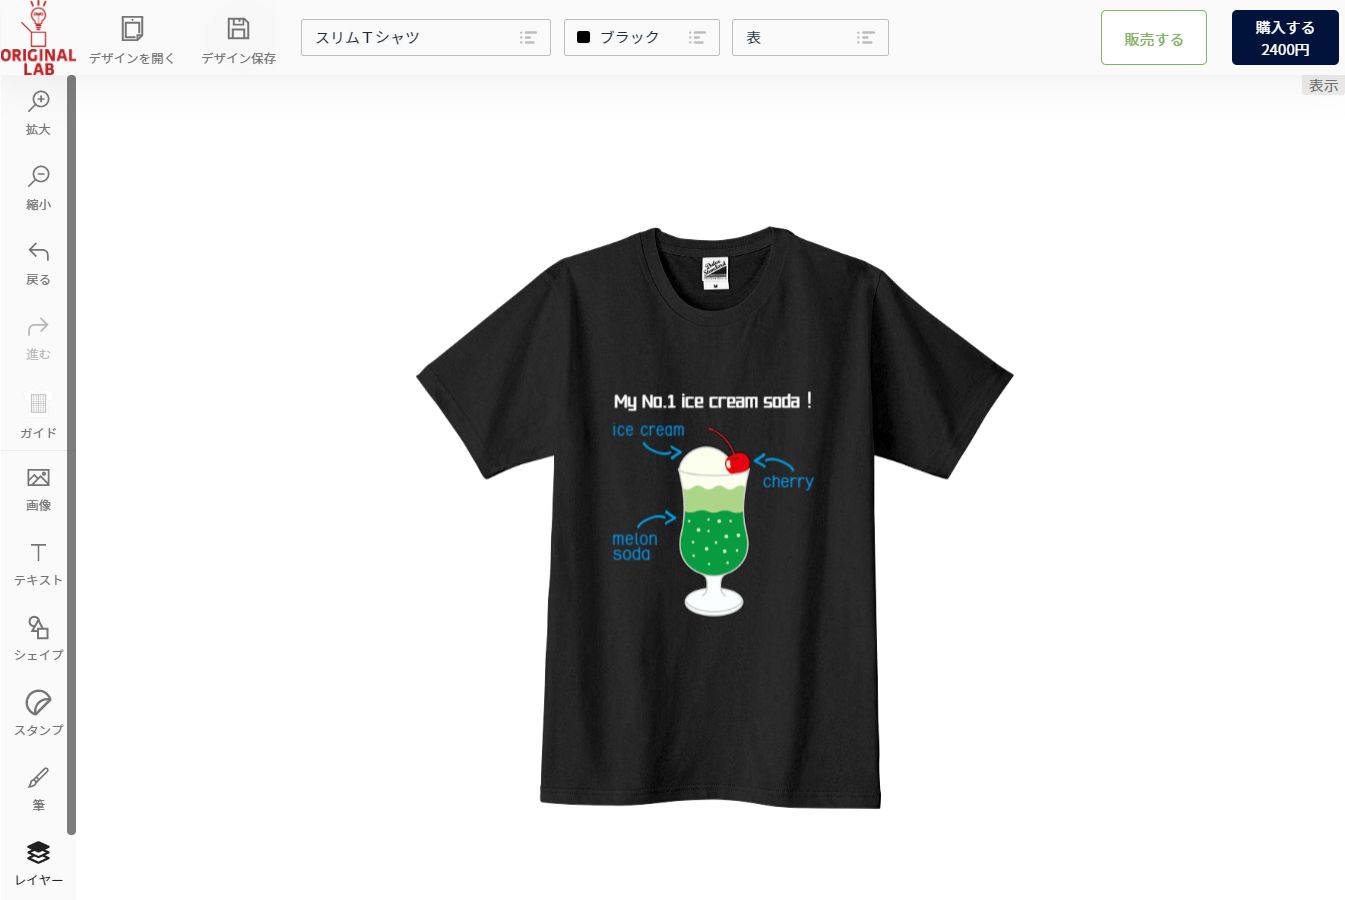 レトロ喫茶 クリームソーダ柄のオリジナルtシャツが人気 激カワ作成のコツ オリジナルtシャツラボブログ